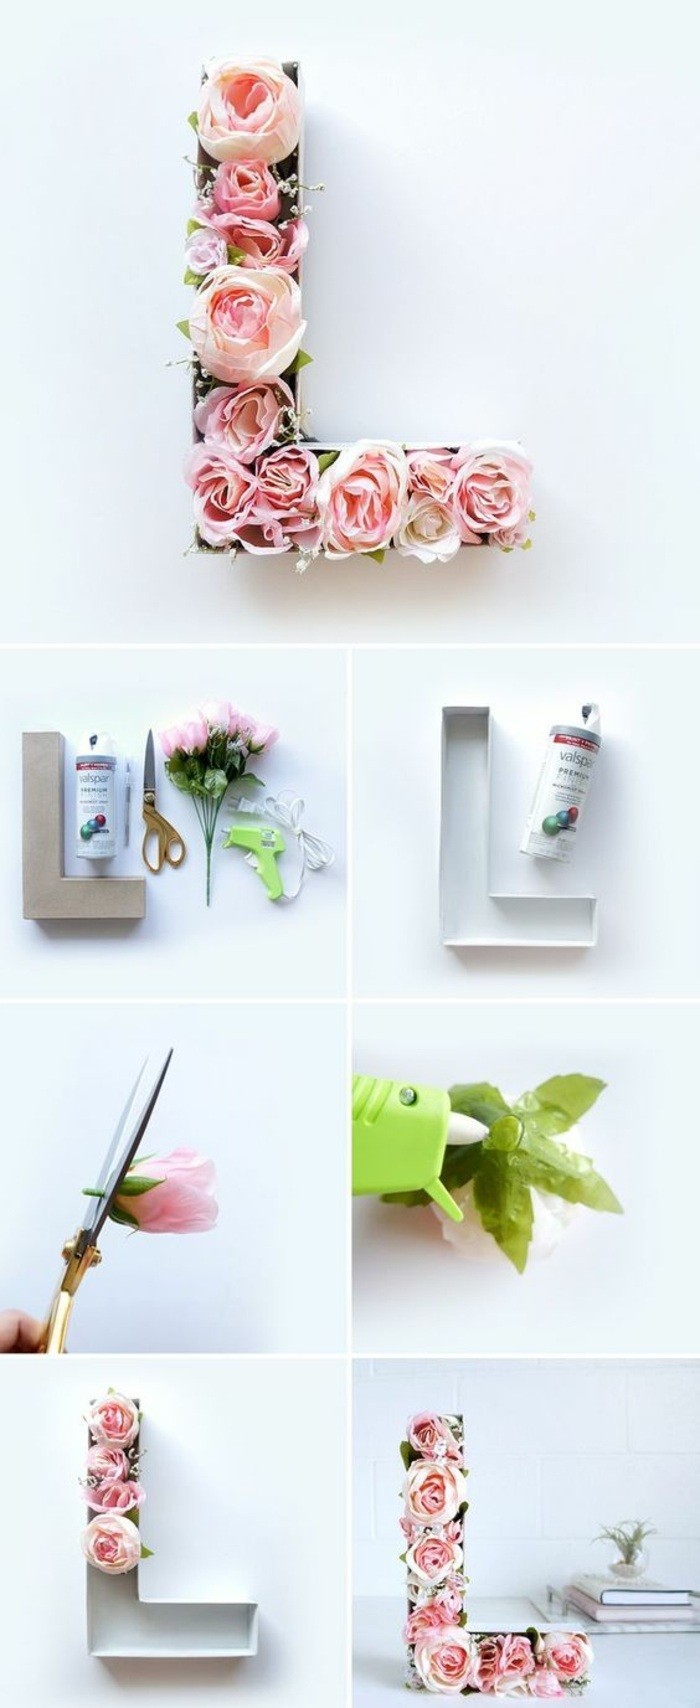 wanddeko-selber-machen-fruhlingsdeko-basteln-buchstabe-mit-rosen-dekorieren